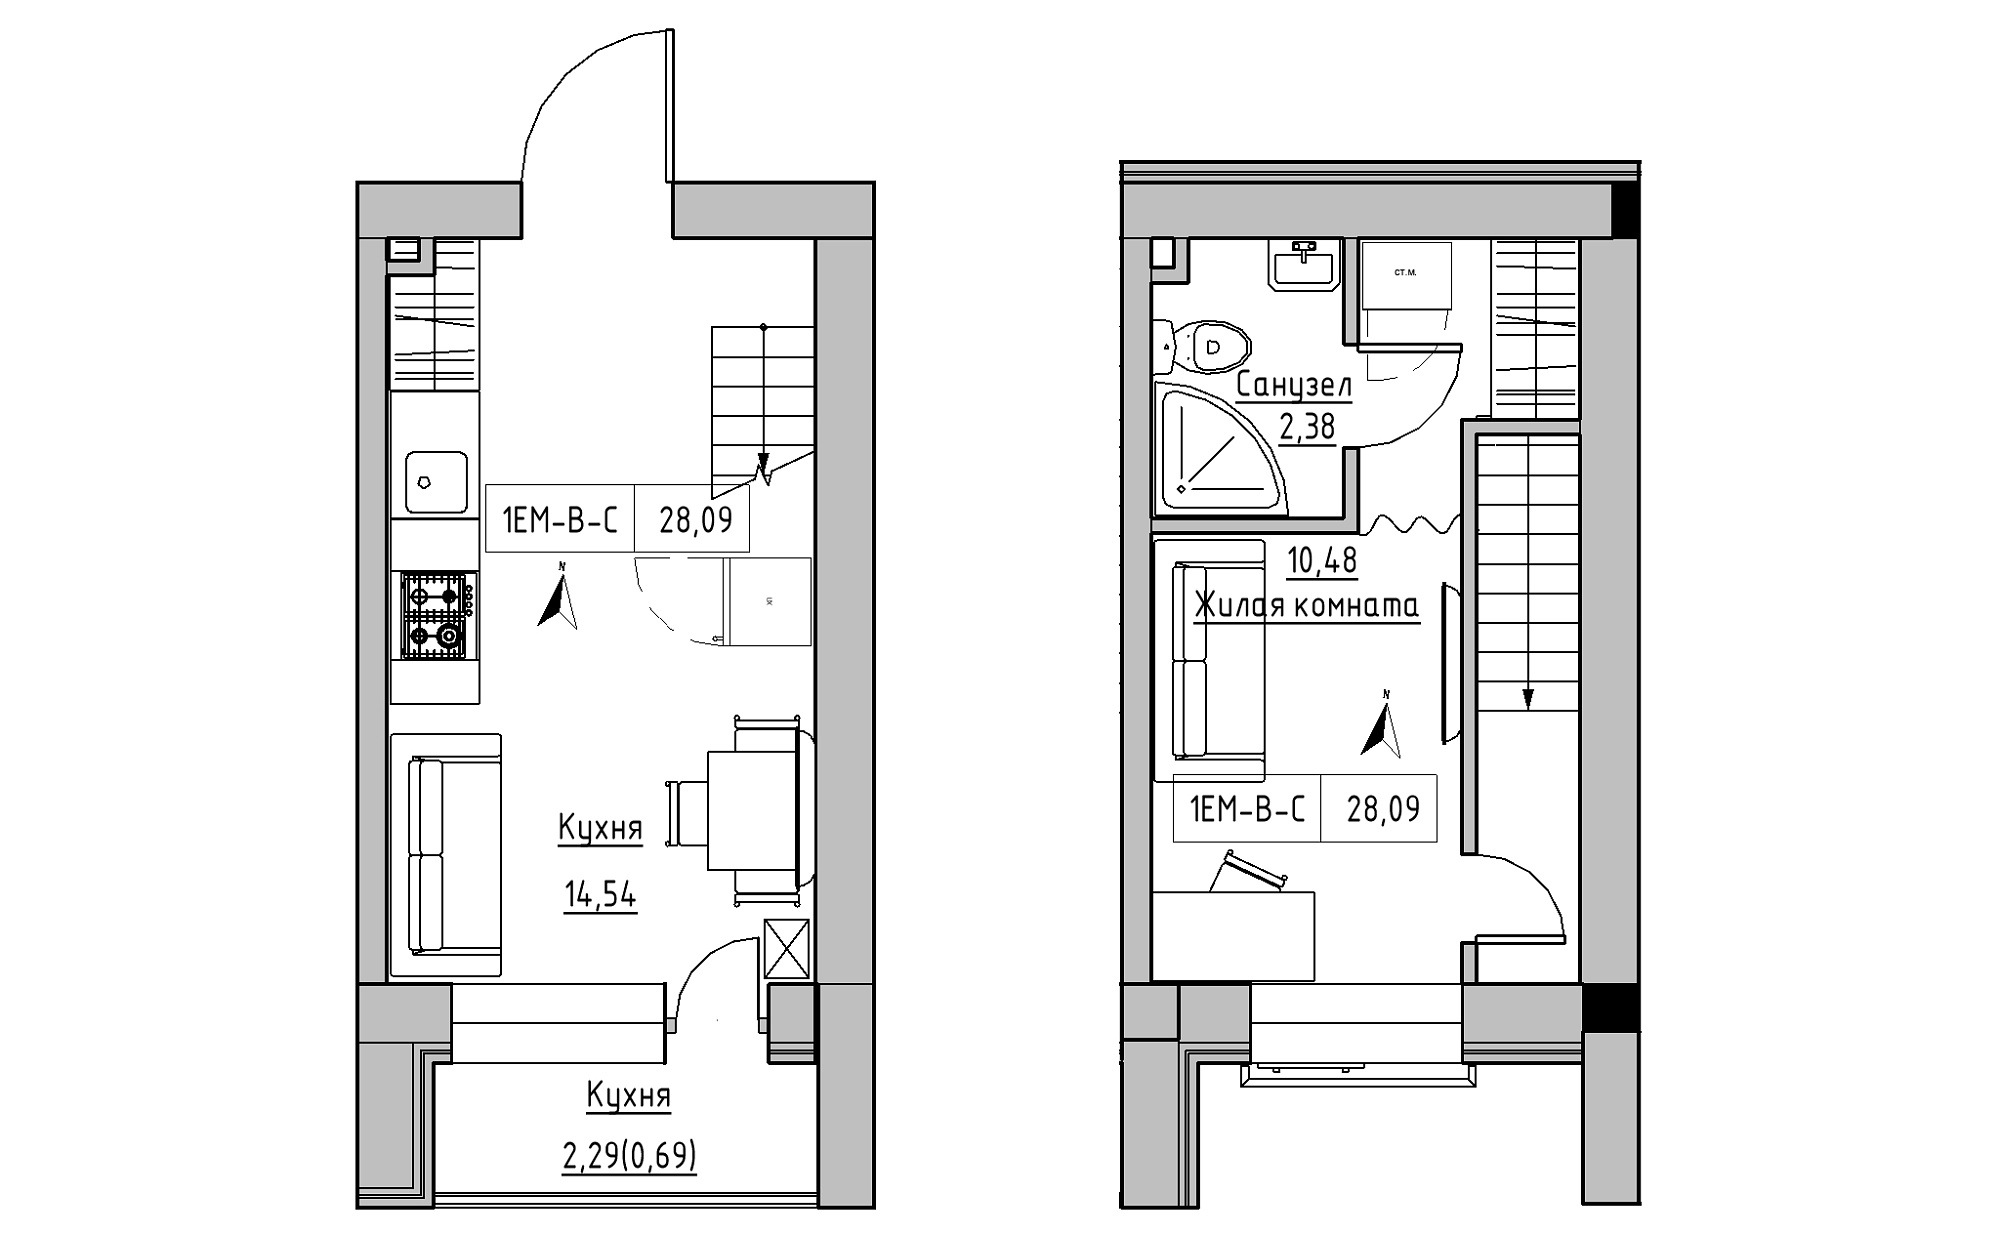 Planning 2-lvl flats area 28.09m2, KS-023-05/0009.